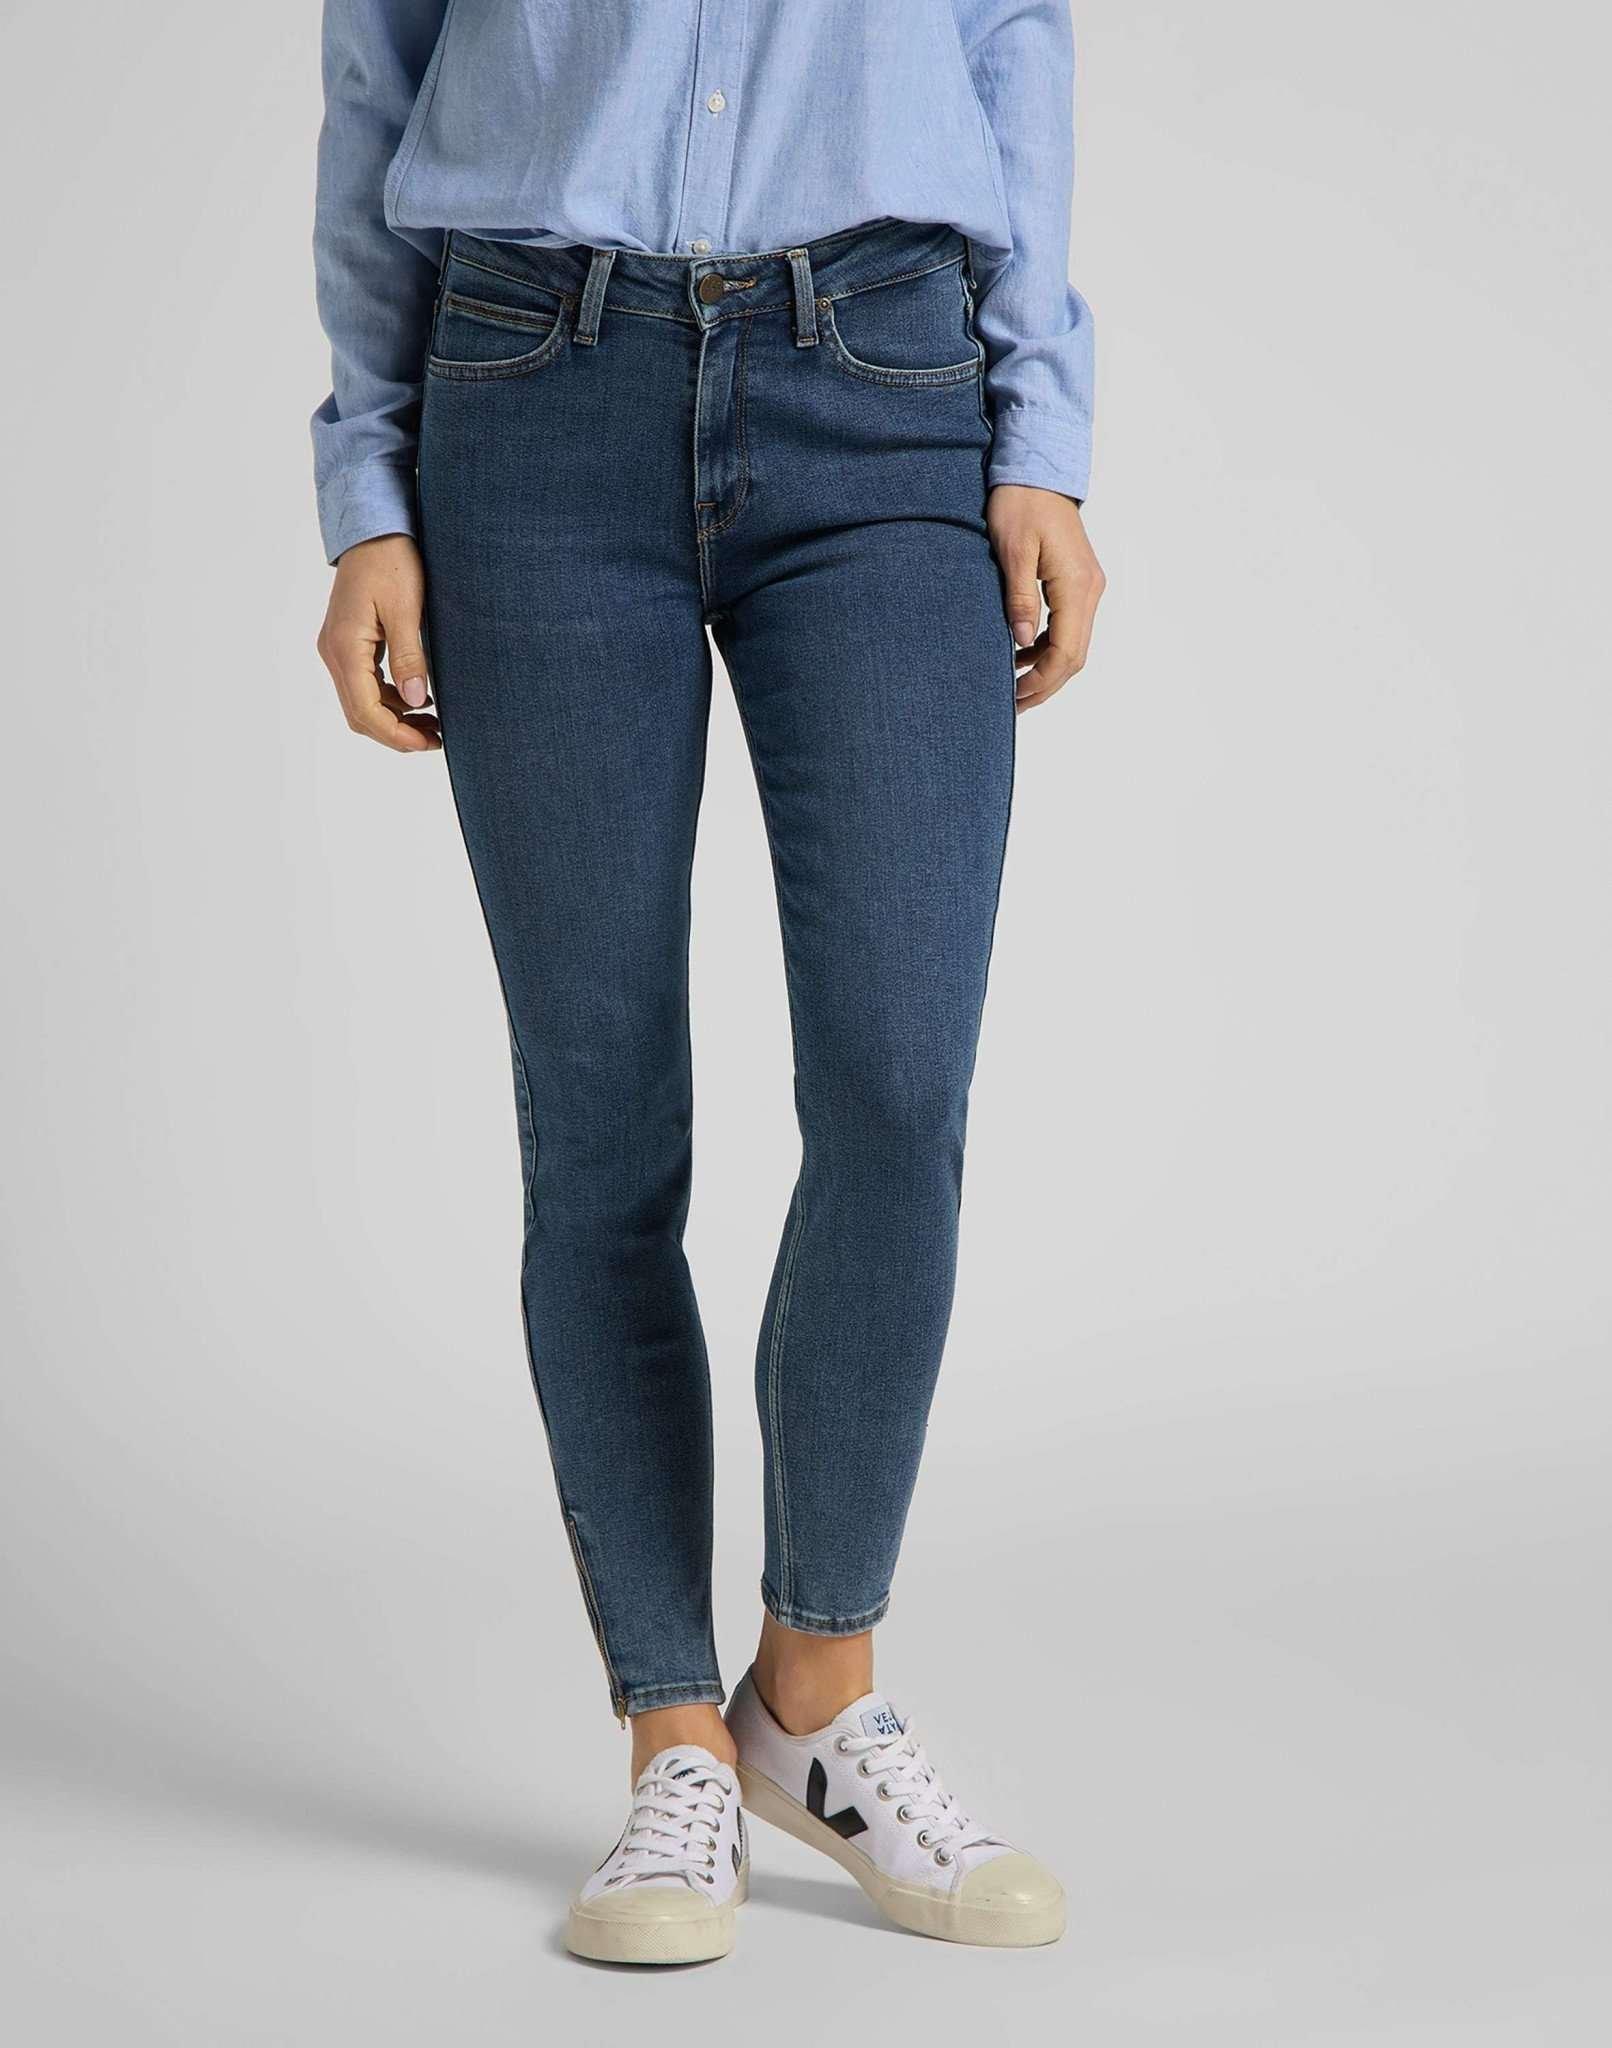 Jeans Skinny Fit Scarlett High Zip Damen Blau Denim W28 von Lee